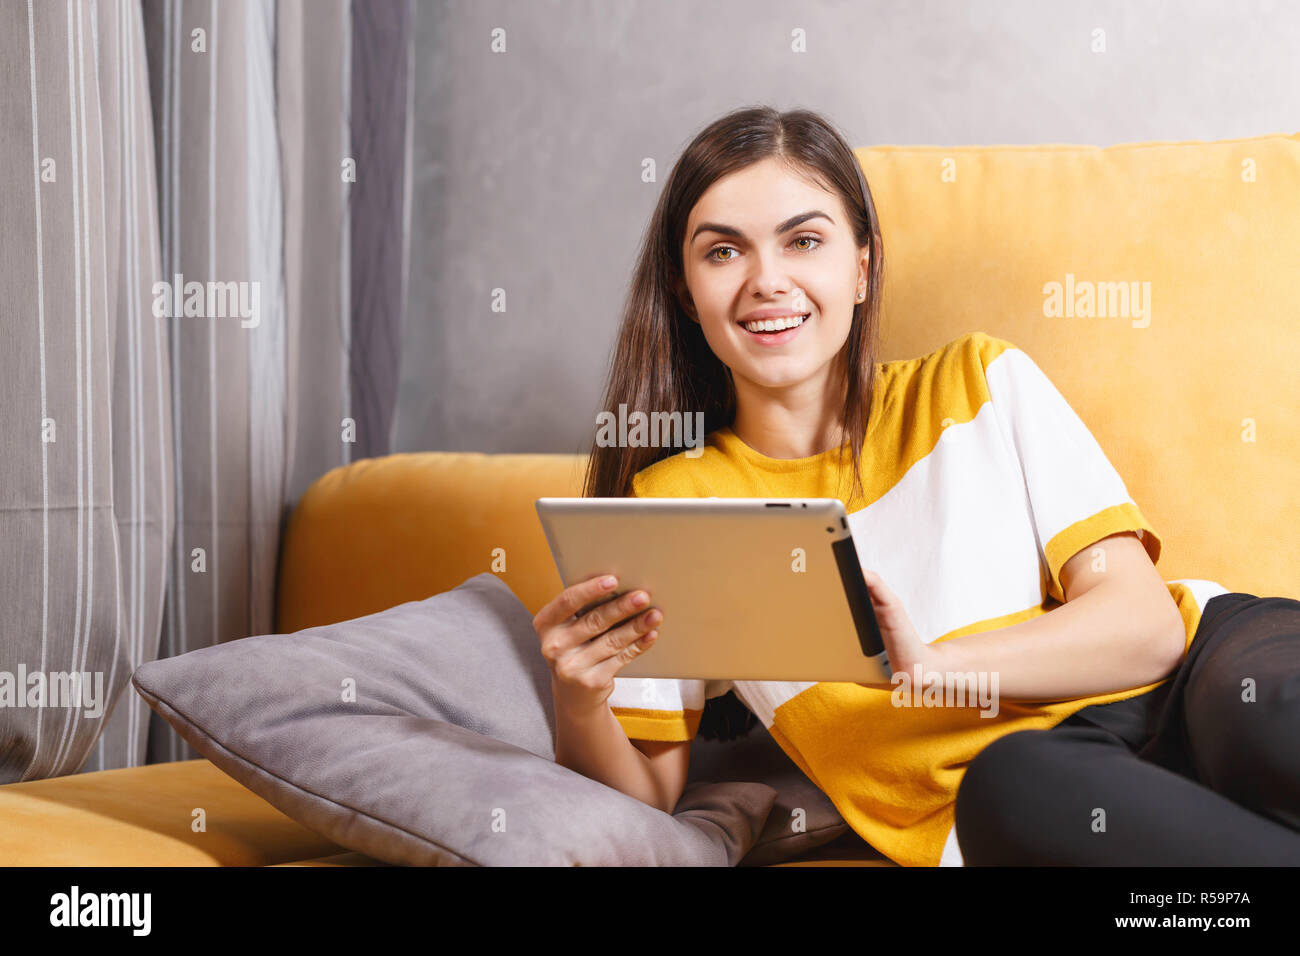 Feliz niña morena de pelo largo acostado en el sofá amarillo en el salón de luz y el uso de la tecnología moderna, tableta digital, el concepto de comunicación Foto de stock